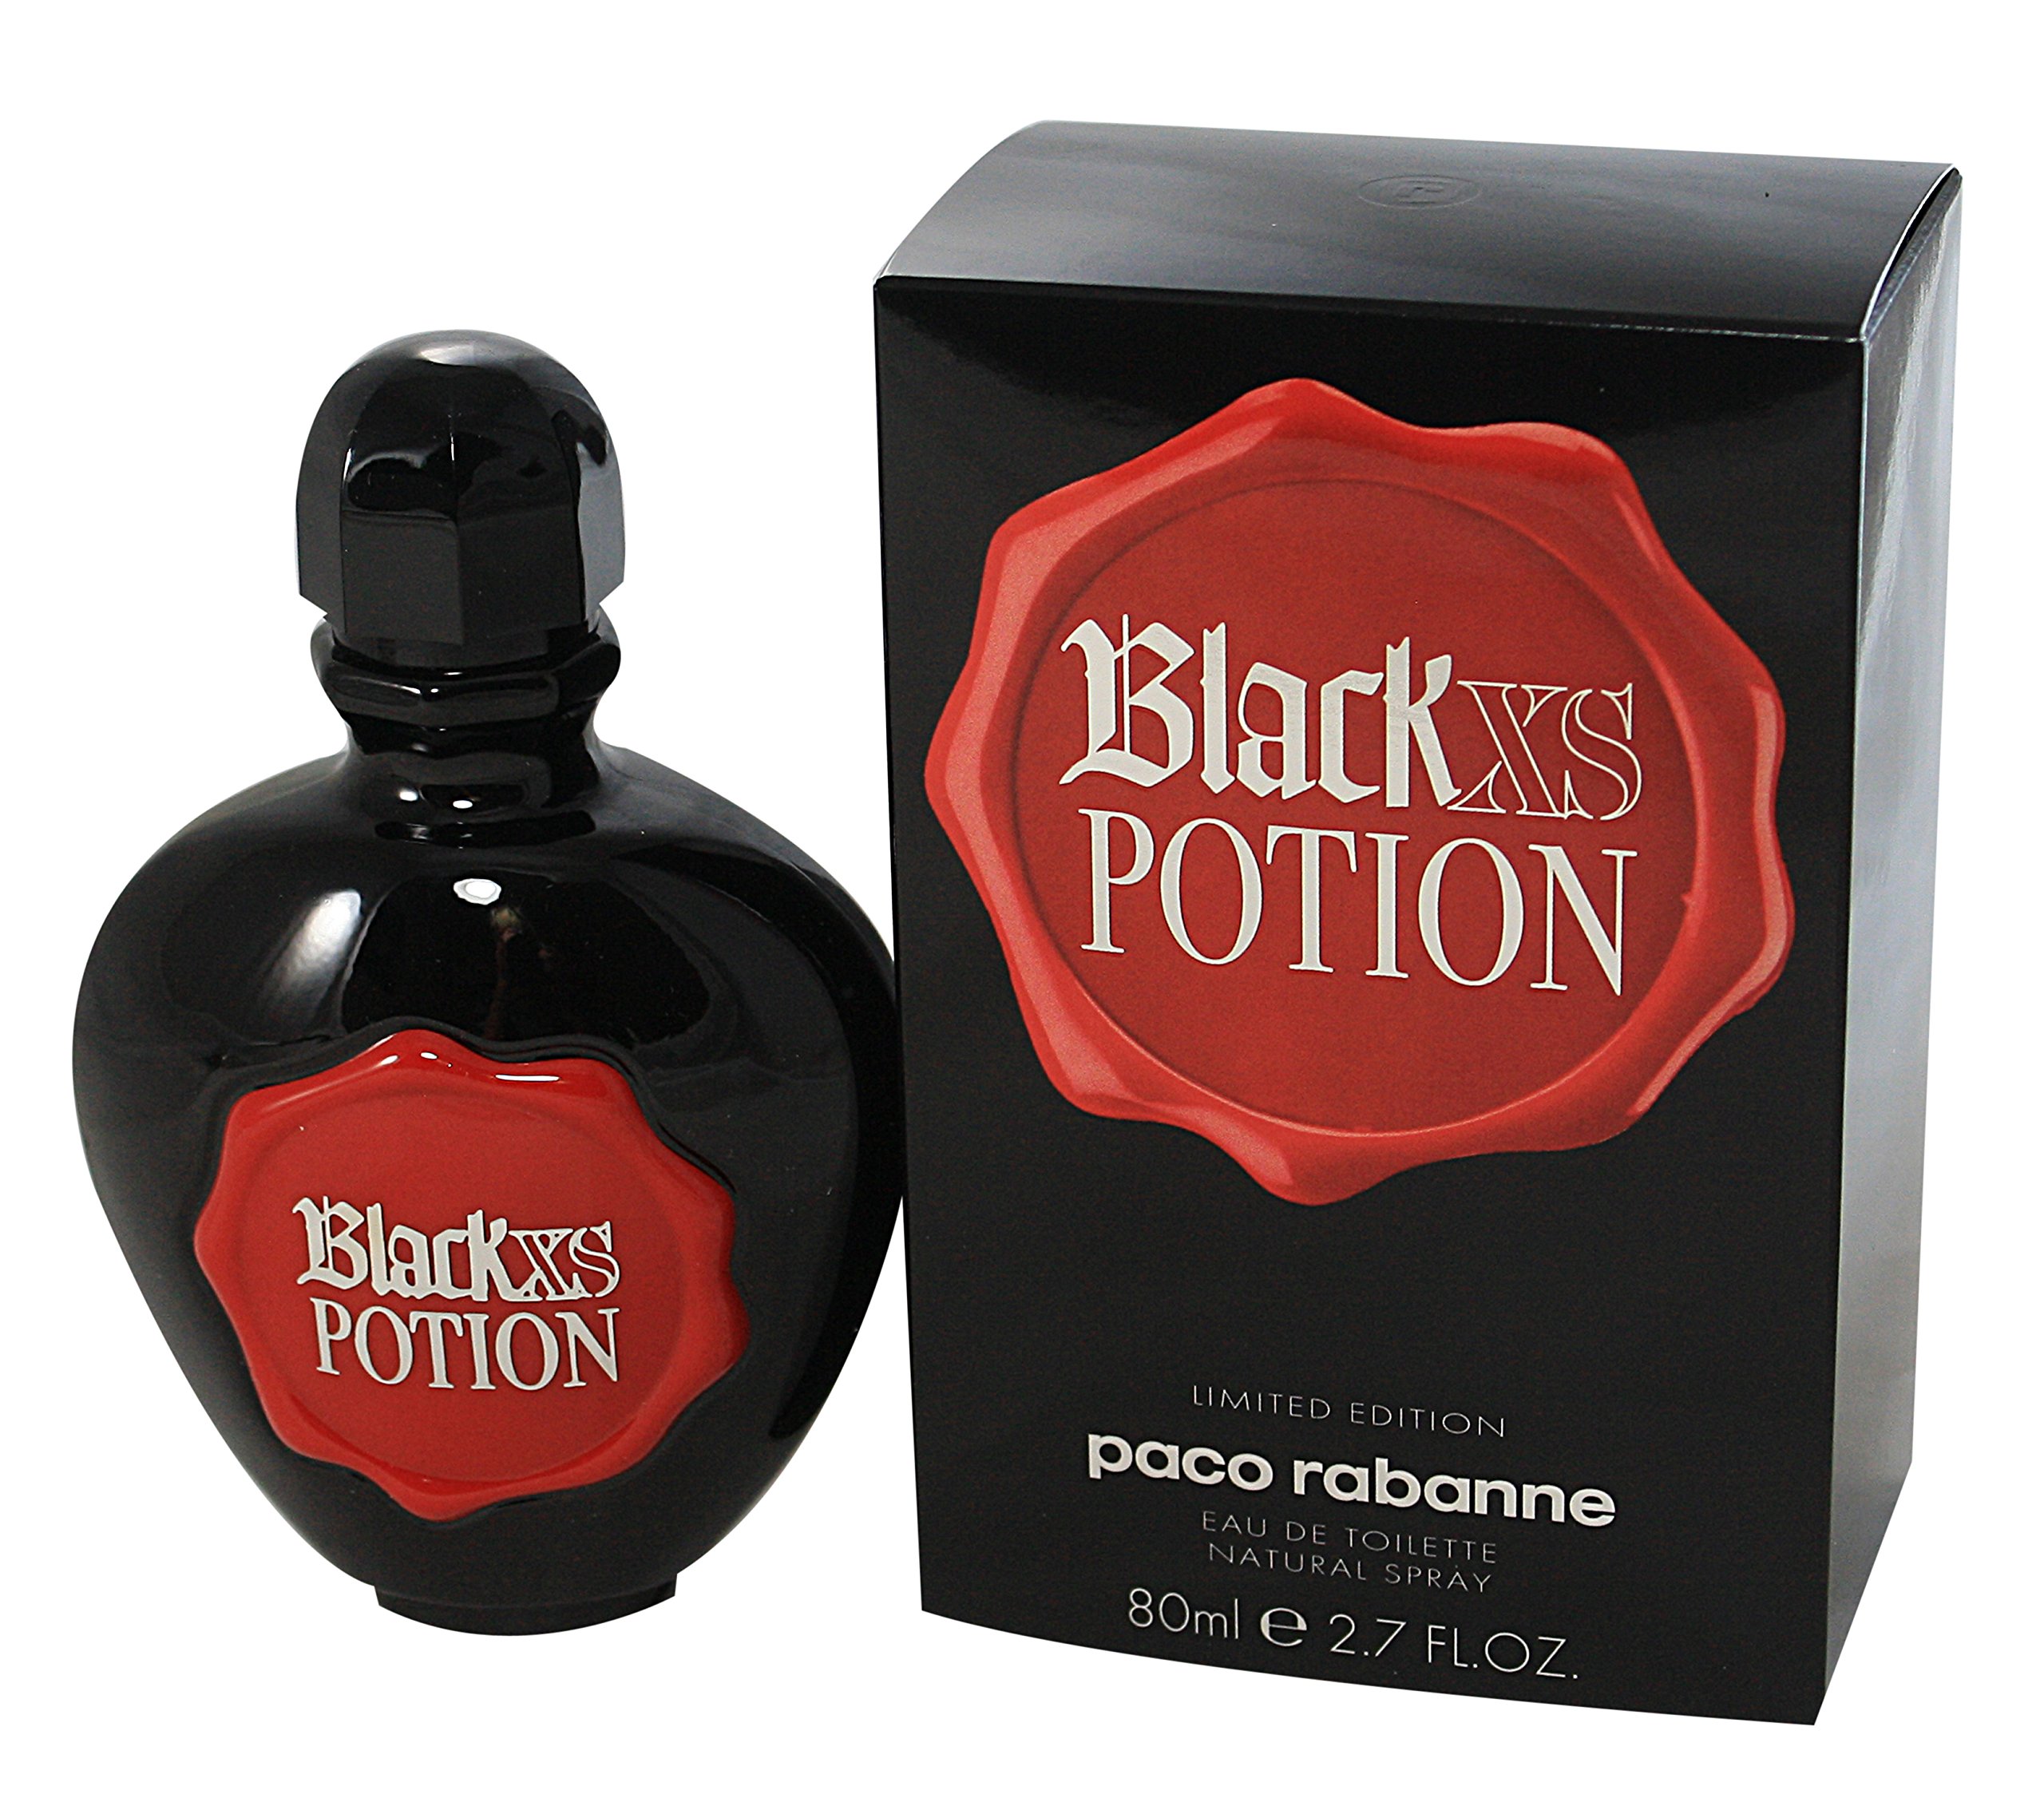 PACO RABANNE Black XS Potion Eau De Toilette Spray, Limited Edition, 2.7 Ounce